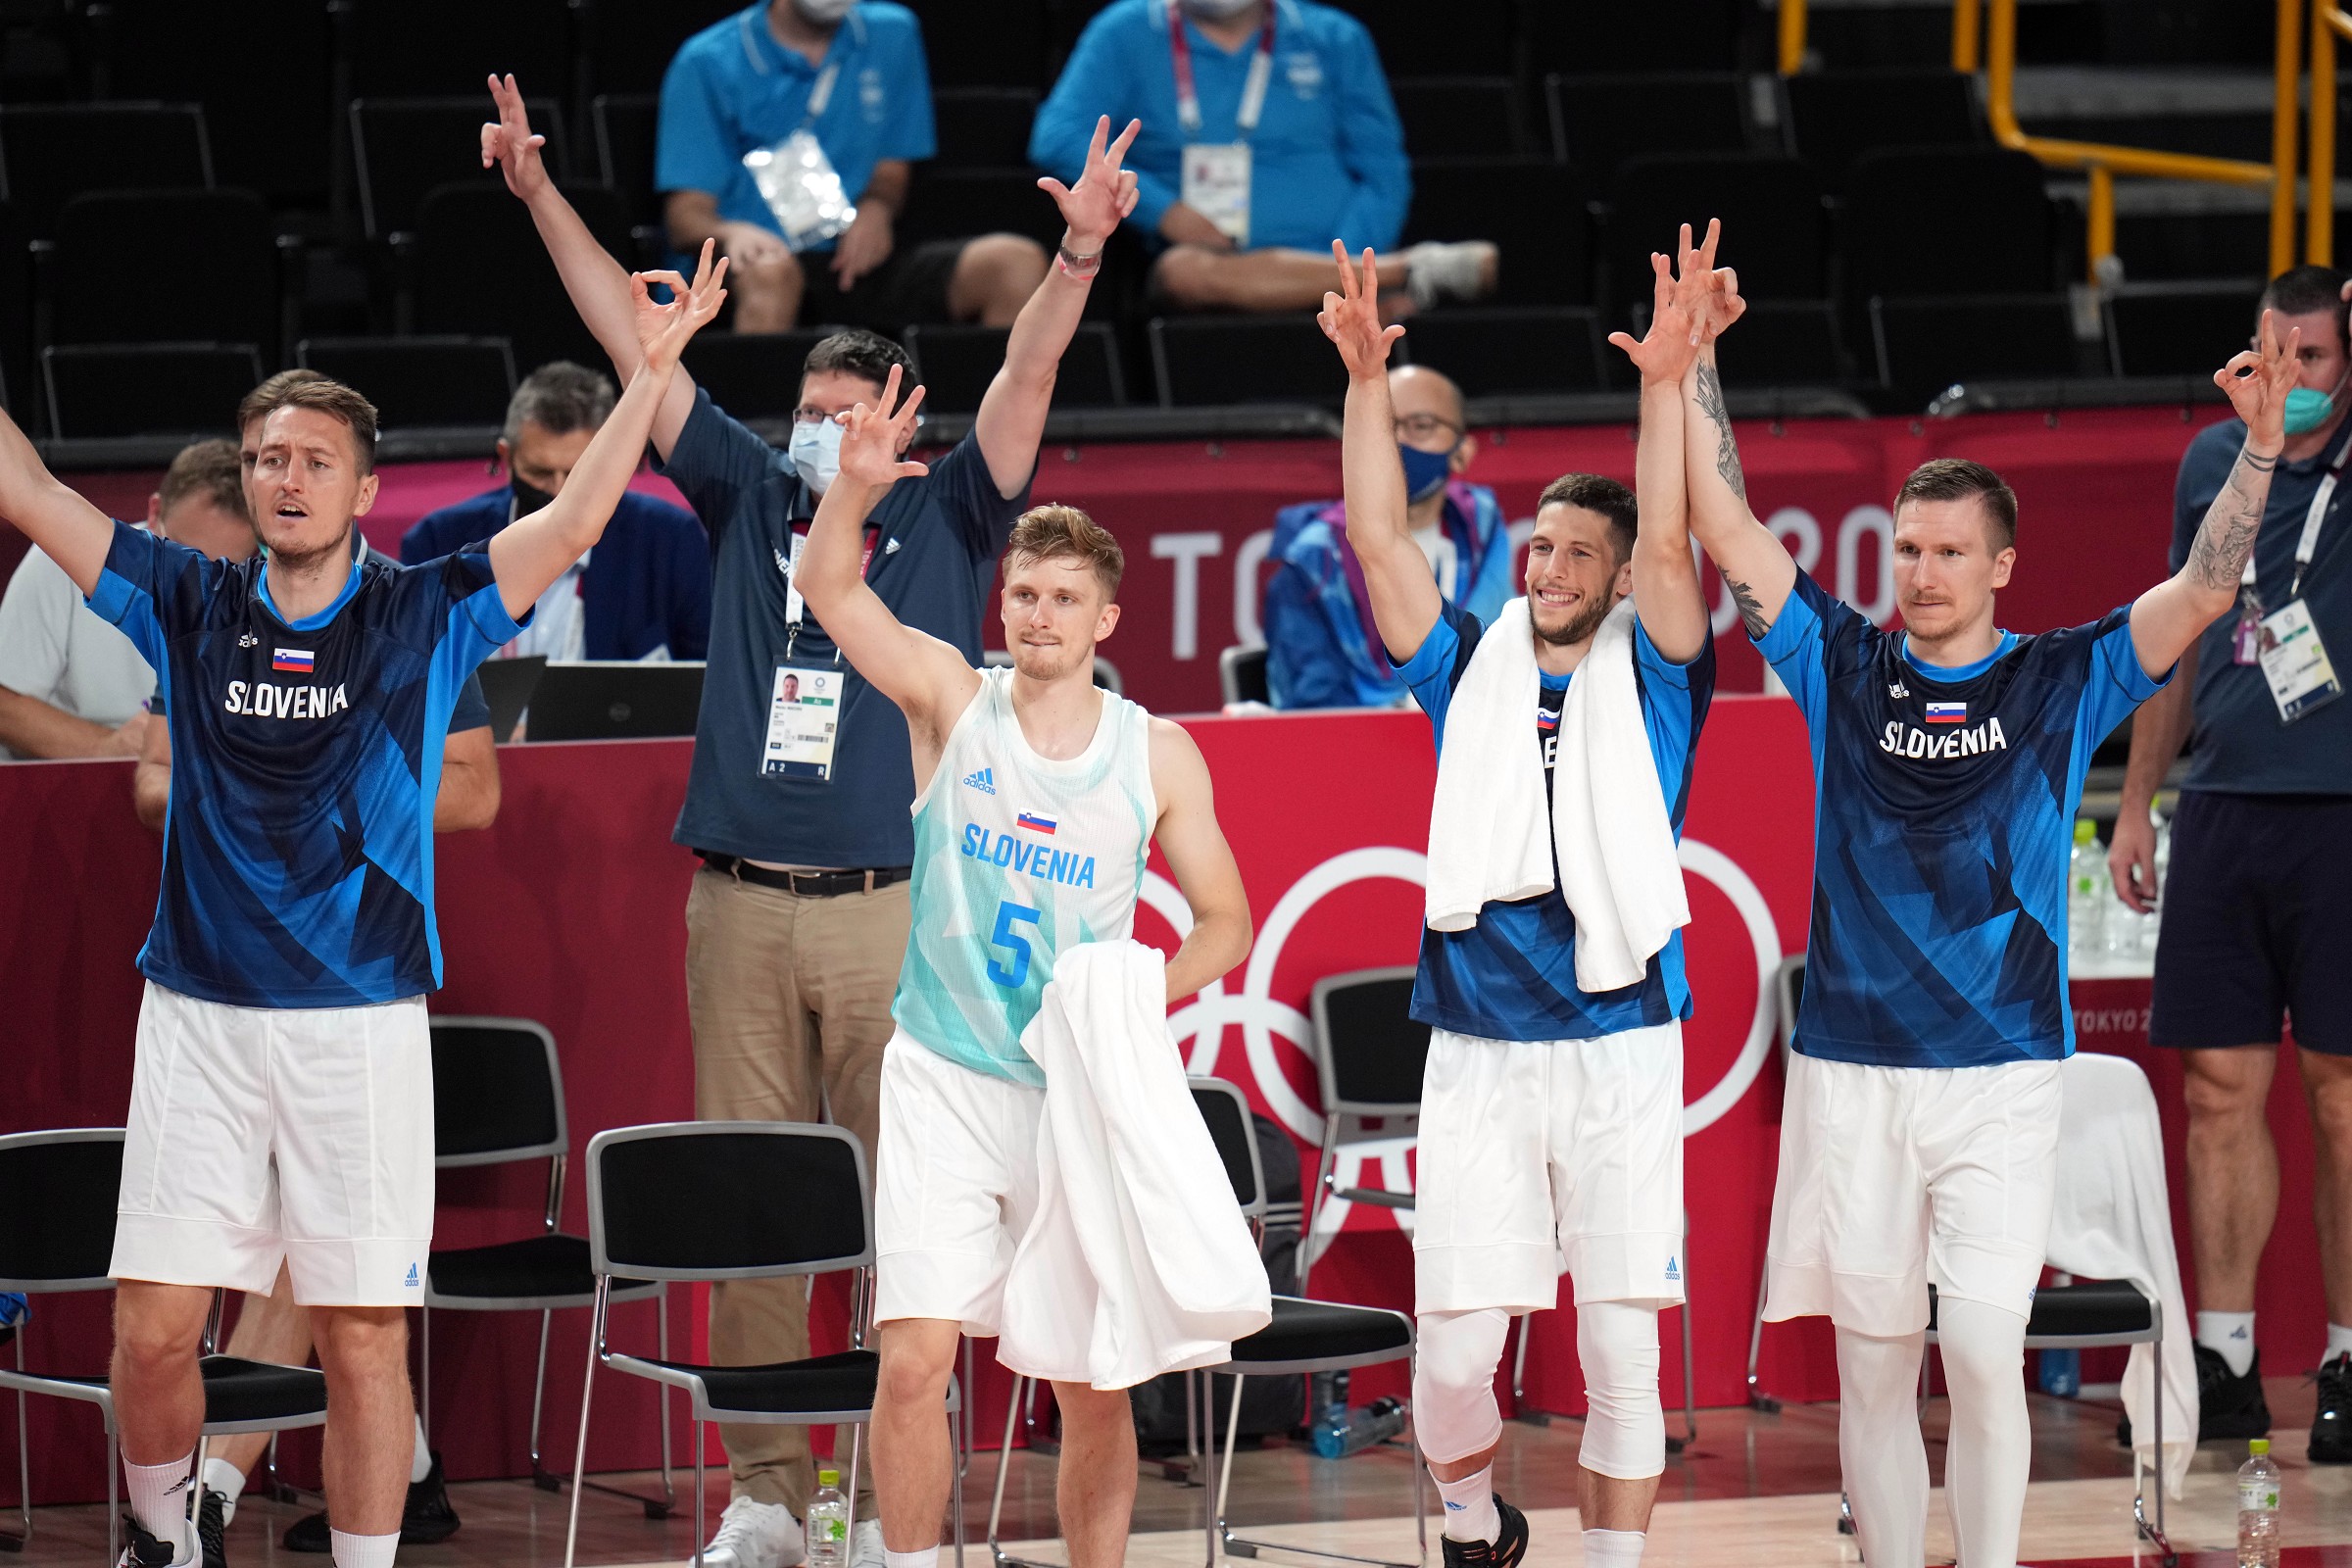 Umirjeni nastopi slovenskih olimpijcev v Tokiu